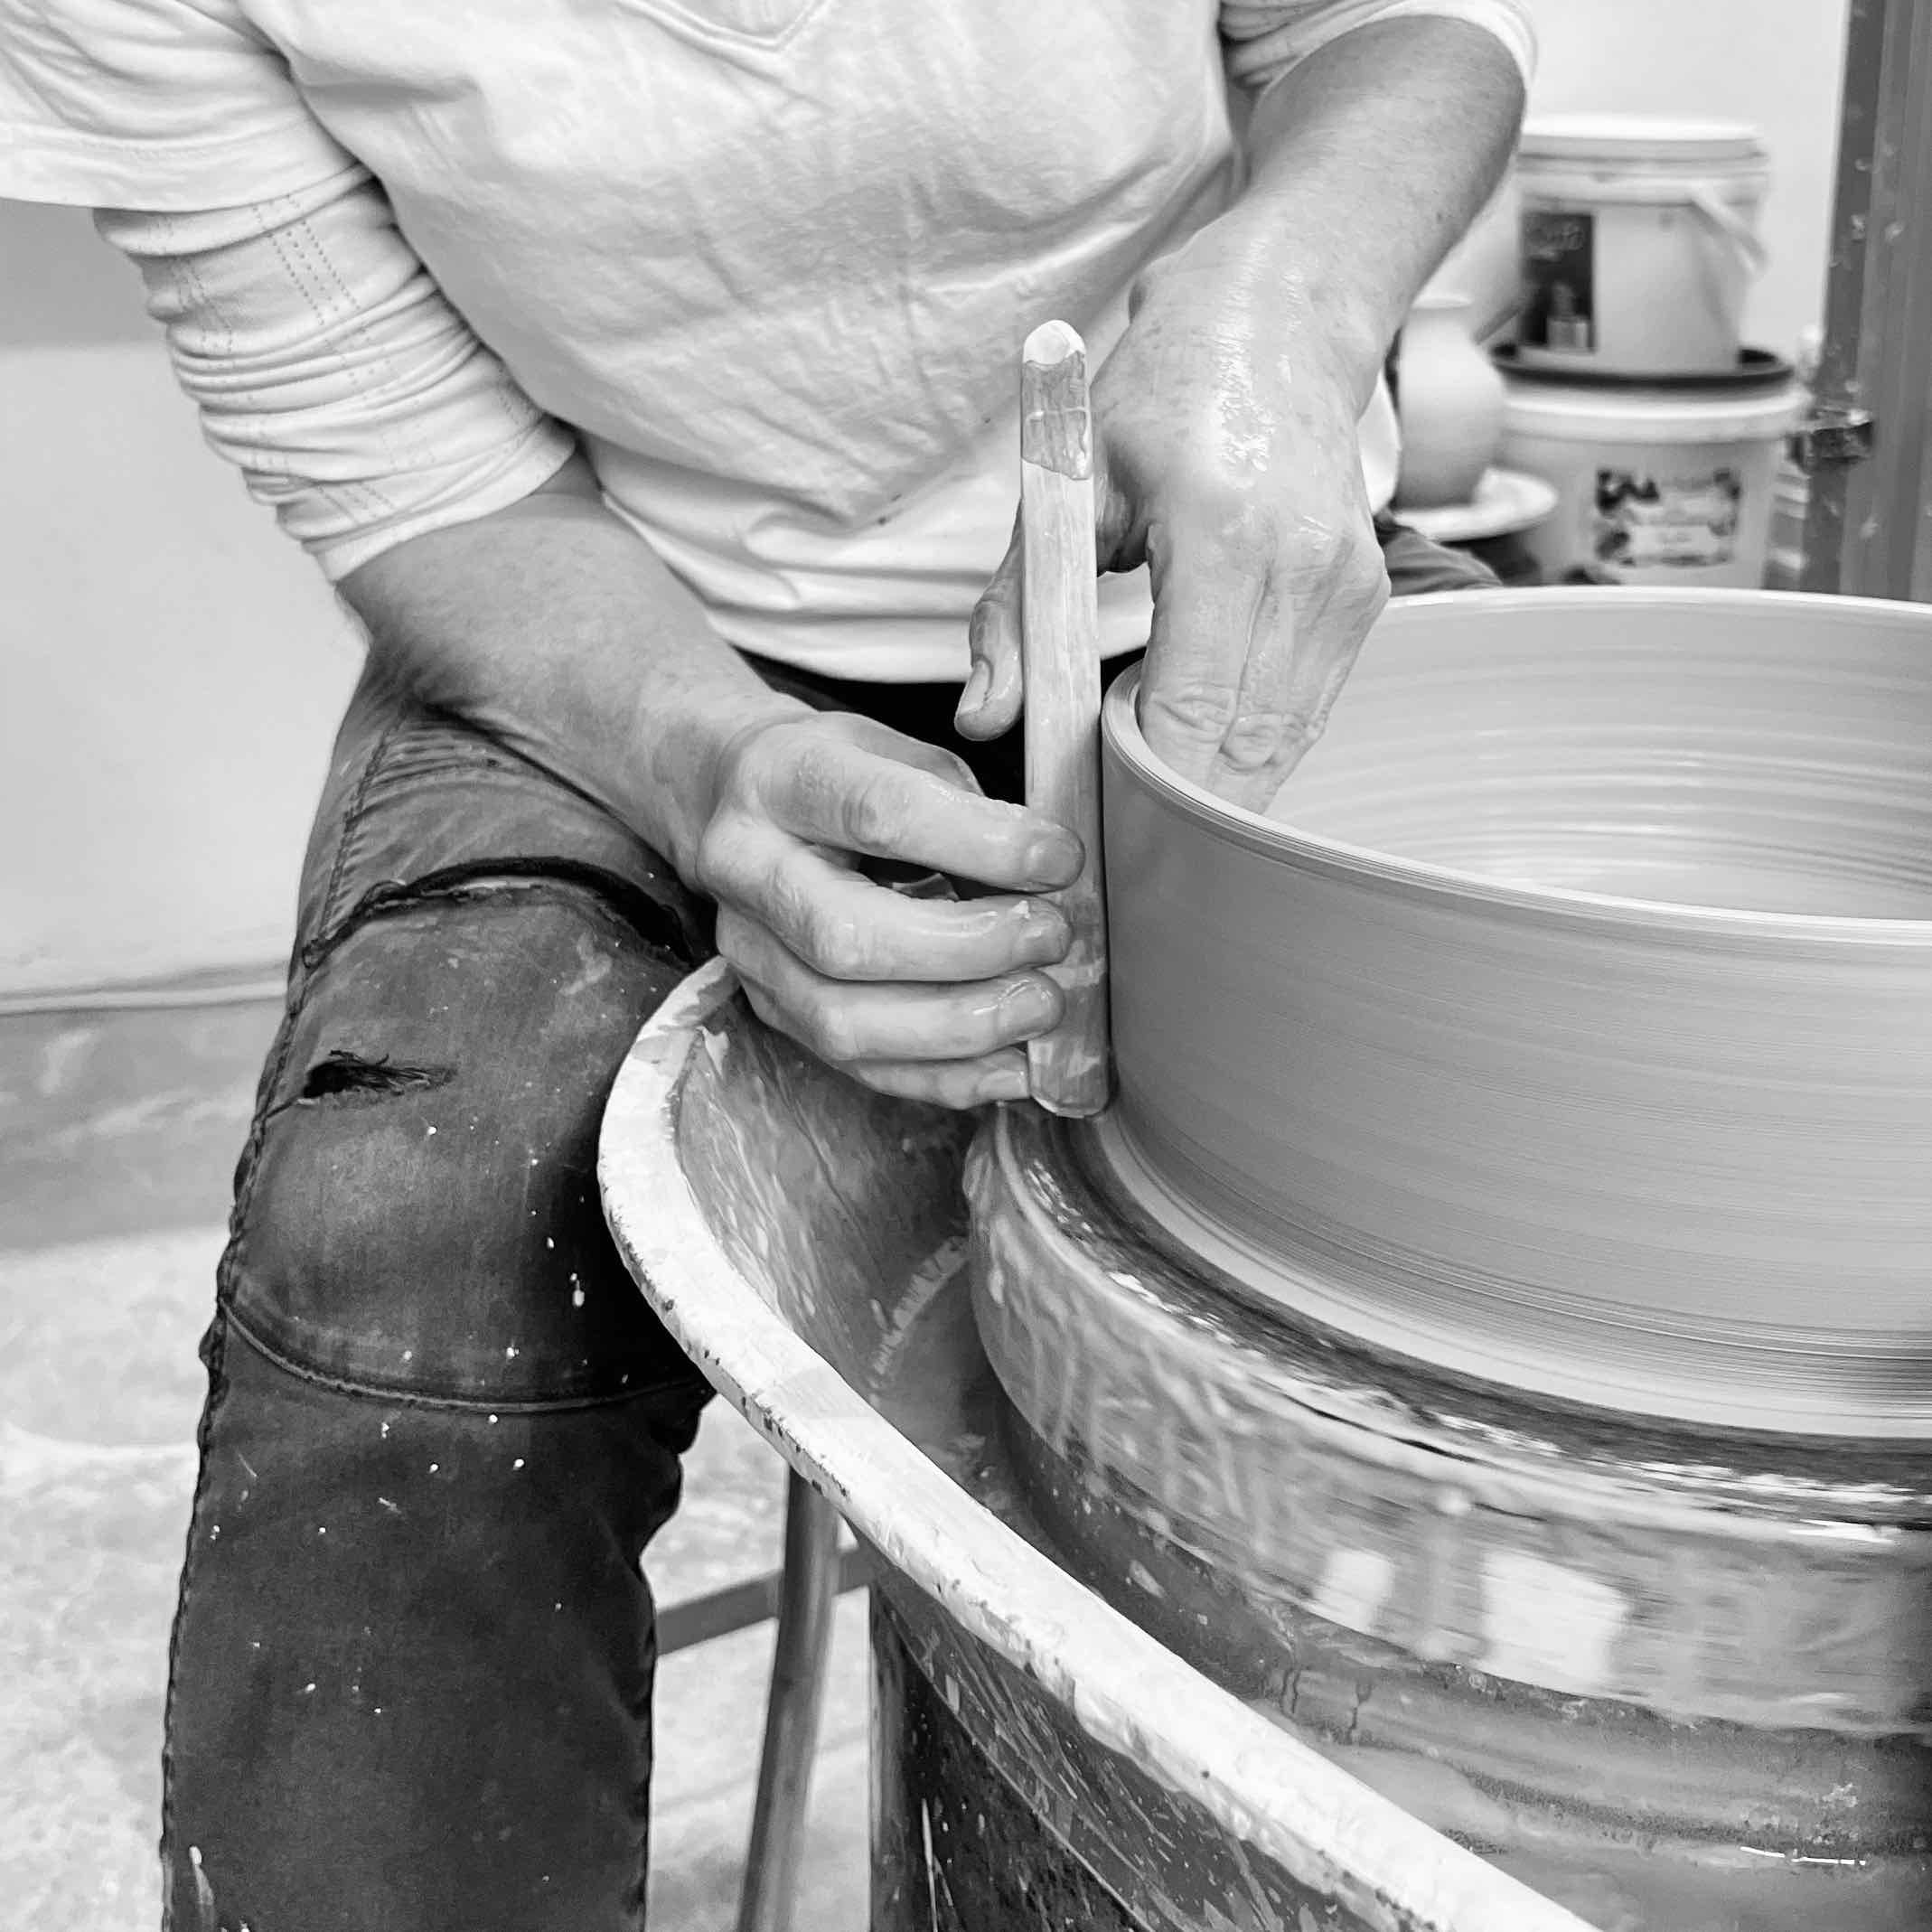 Ceramics made by hand